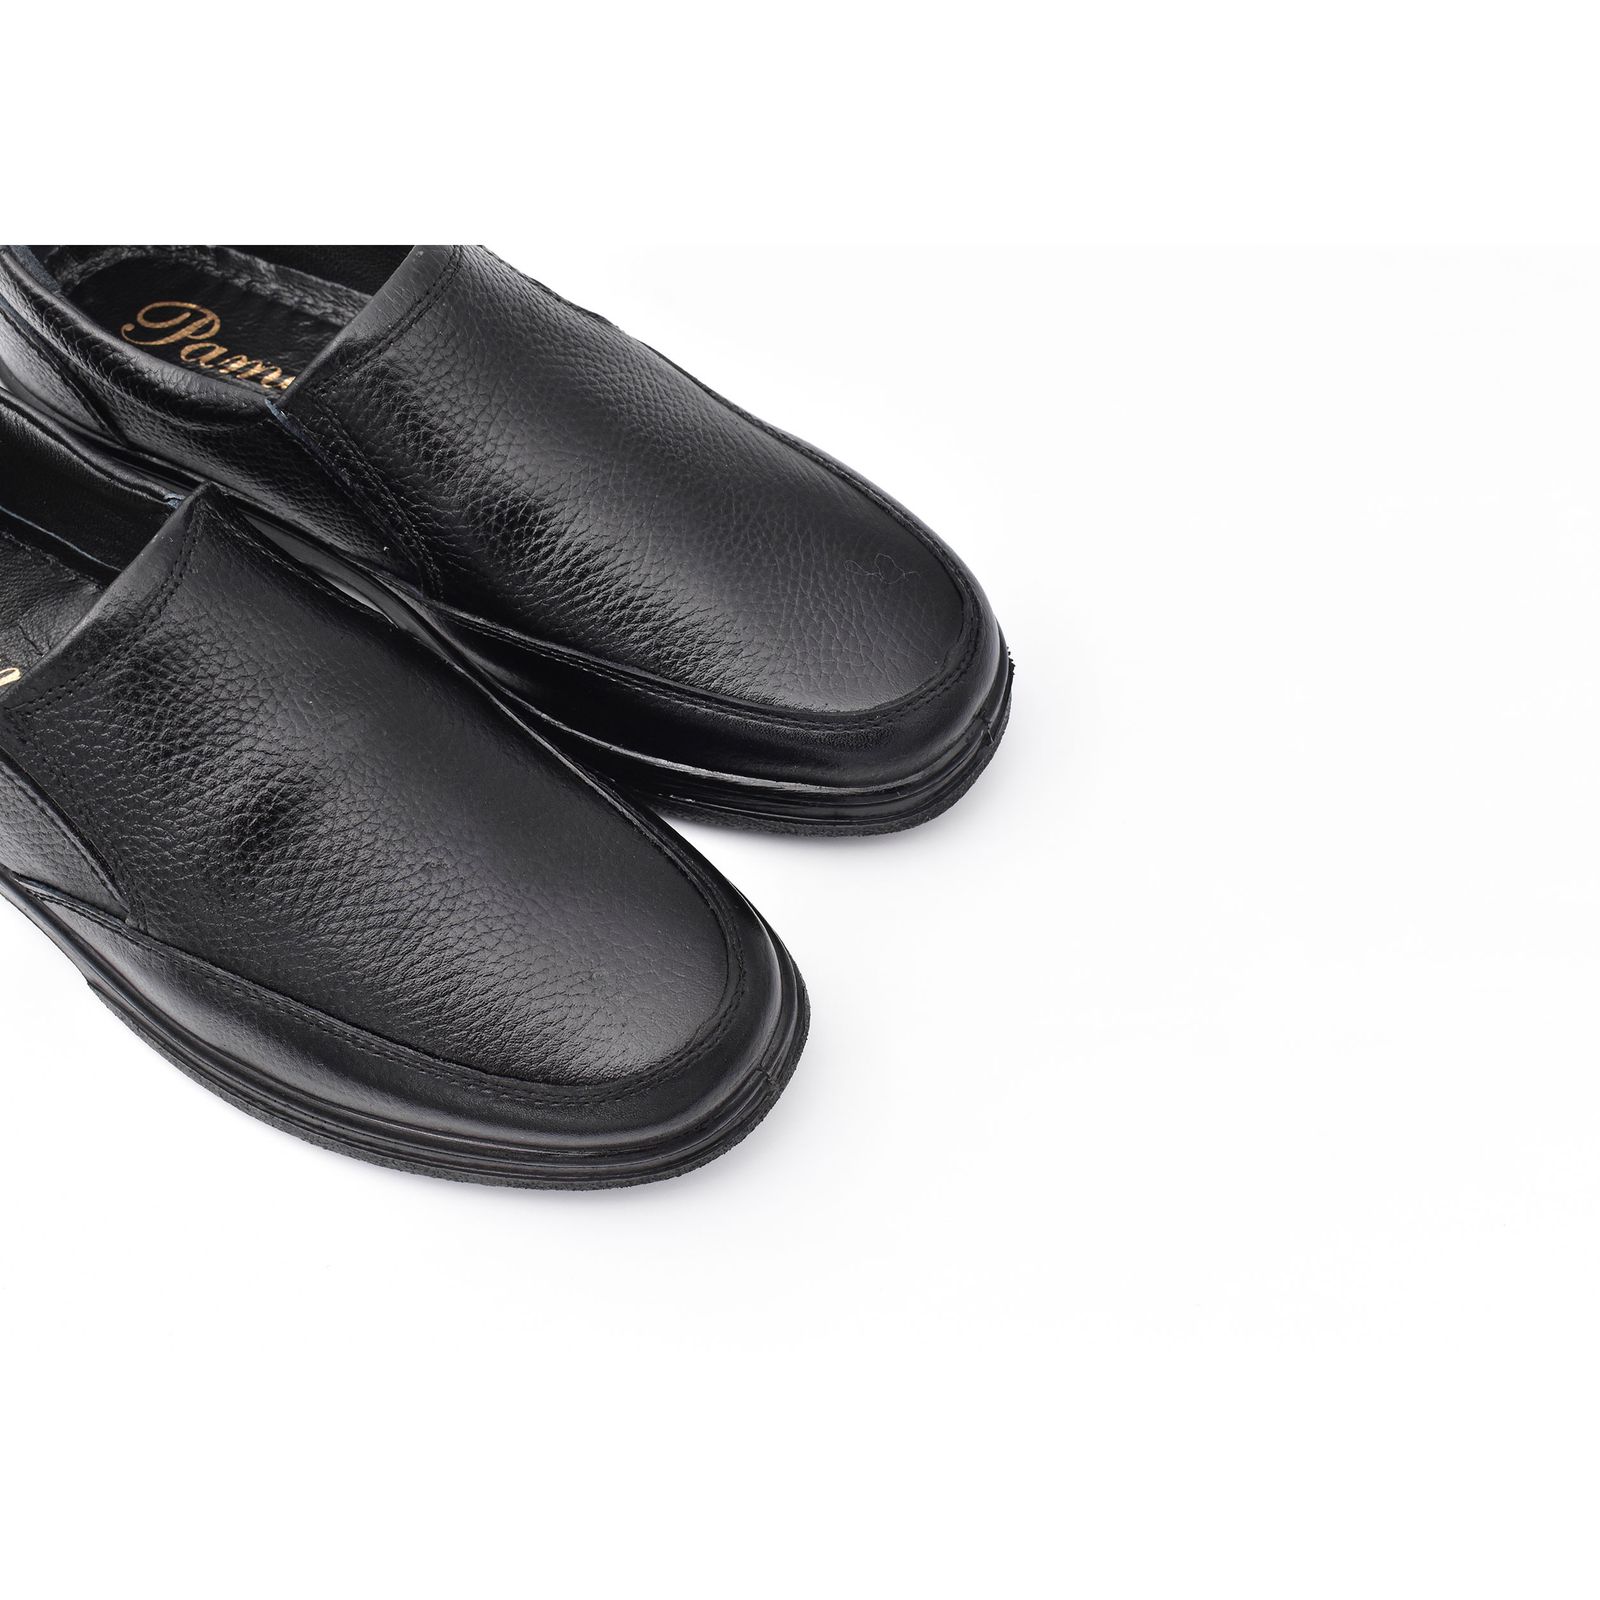 کفش روزمره مردانه پاما مدل JRD کد G1185 -  - 3